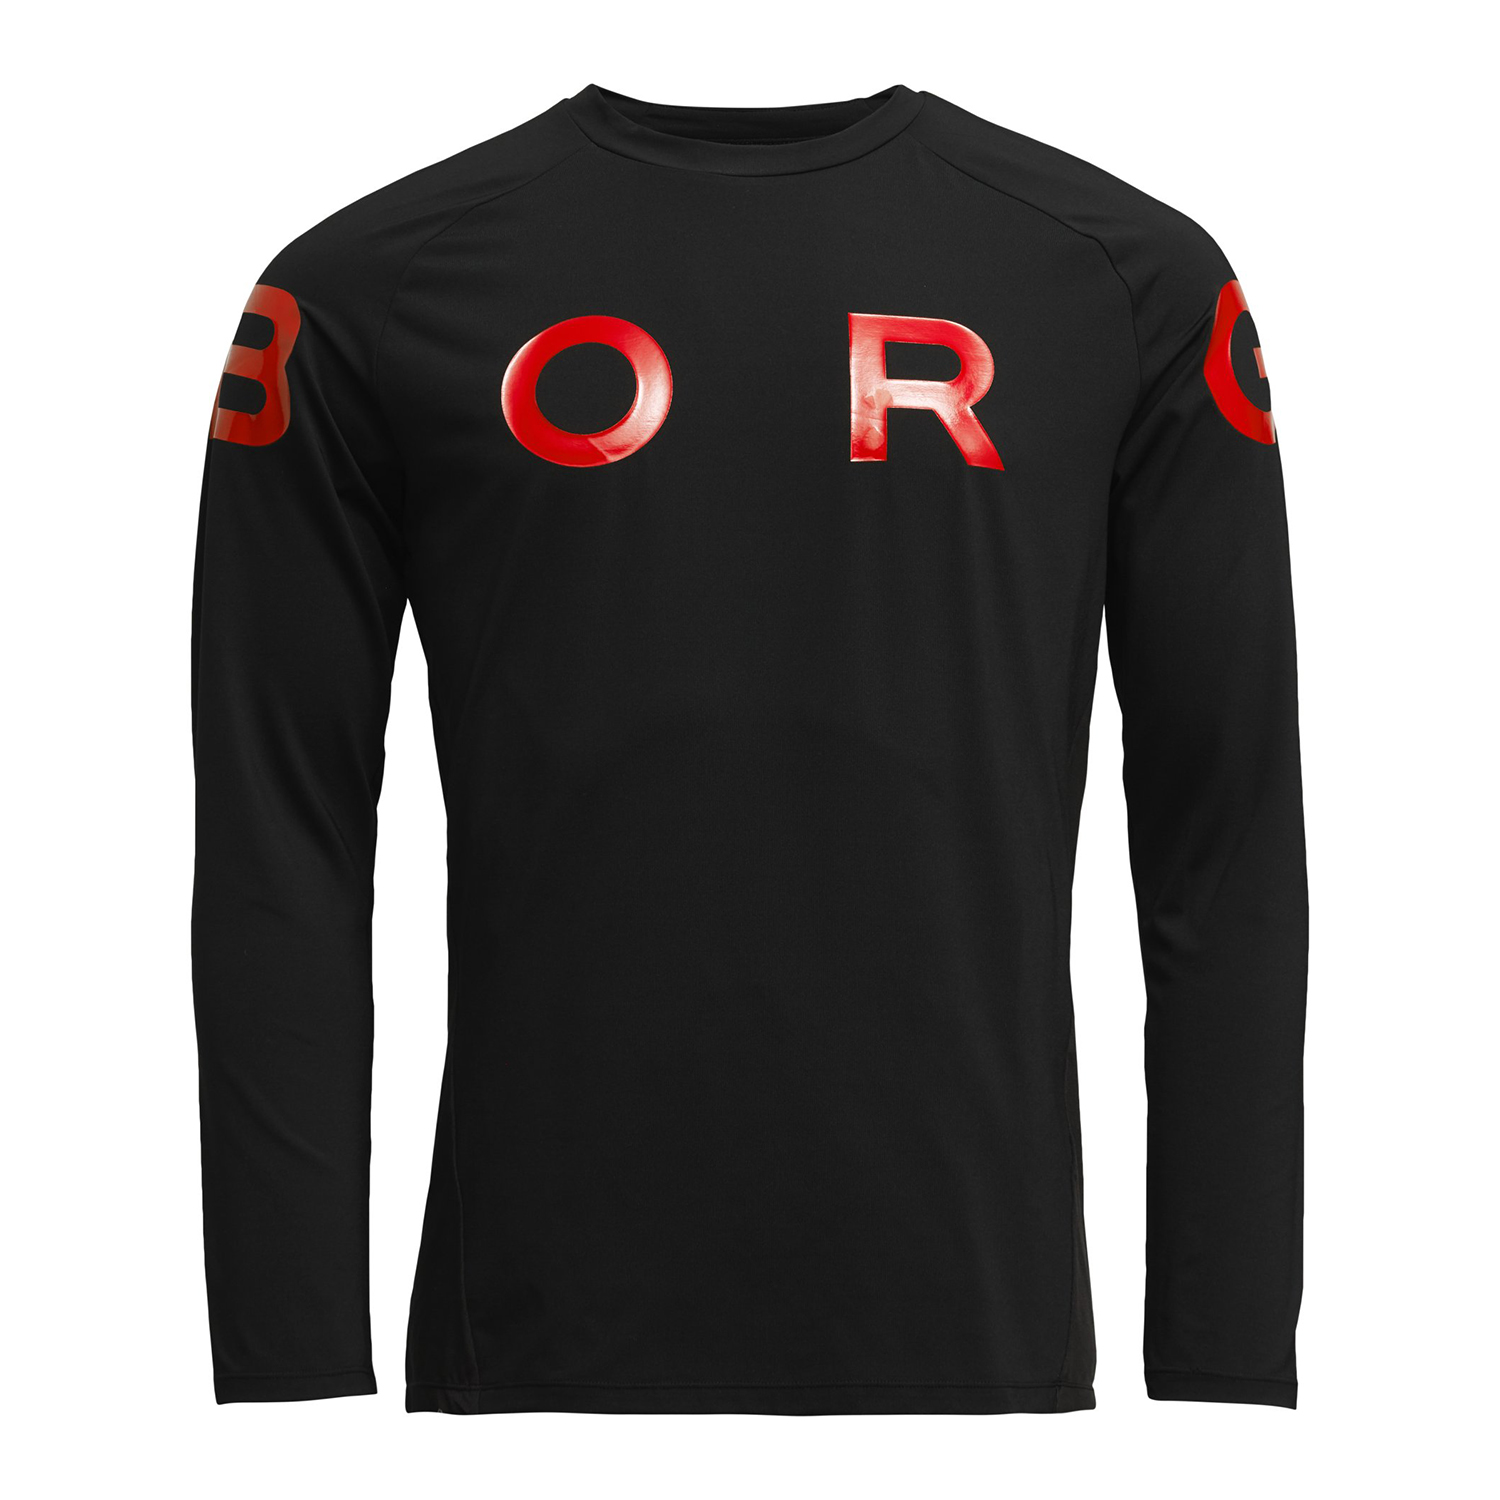 Ανδρικά/Ρούχα/Αθλητικά/Φούτερ-Μακρυμάνικα BJORN BORG - Ανδρική αθλητική μπλούζα BJORN BORG μαύρη κόκκινη